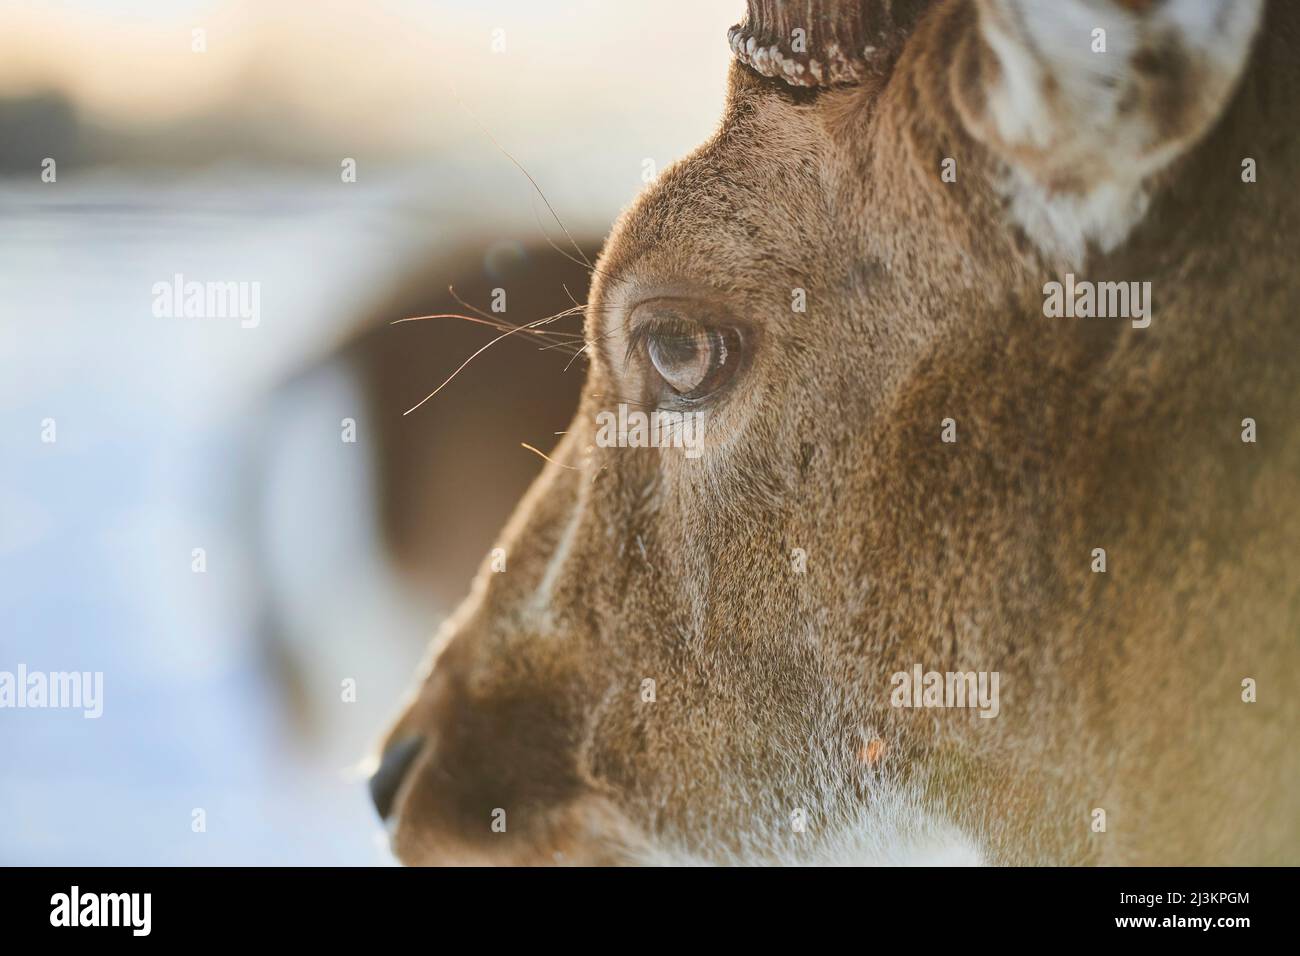 Primo piano estremo del volto e dell'occhio di un cervo (Dama dama) buck; Baviera, Germania Foto Stock